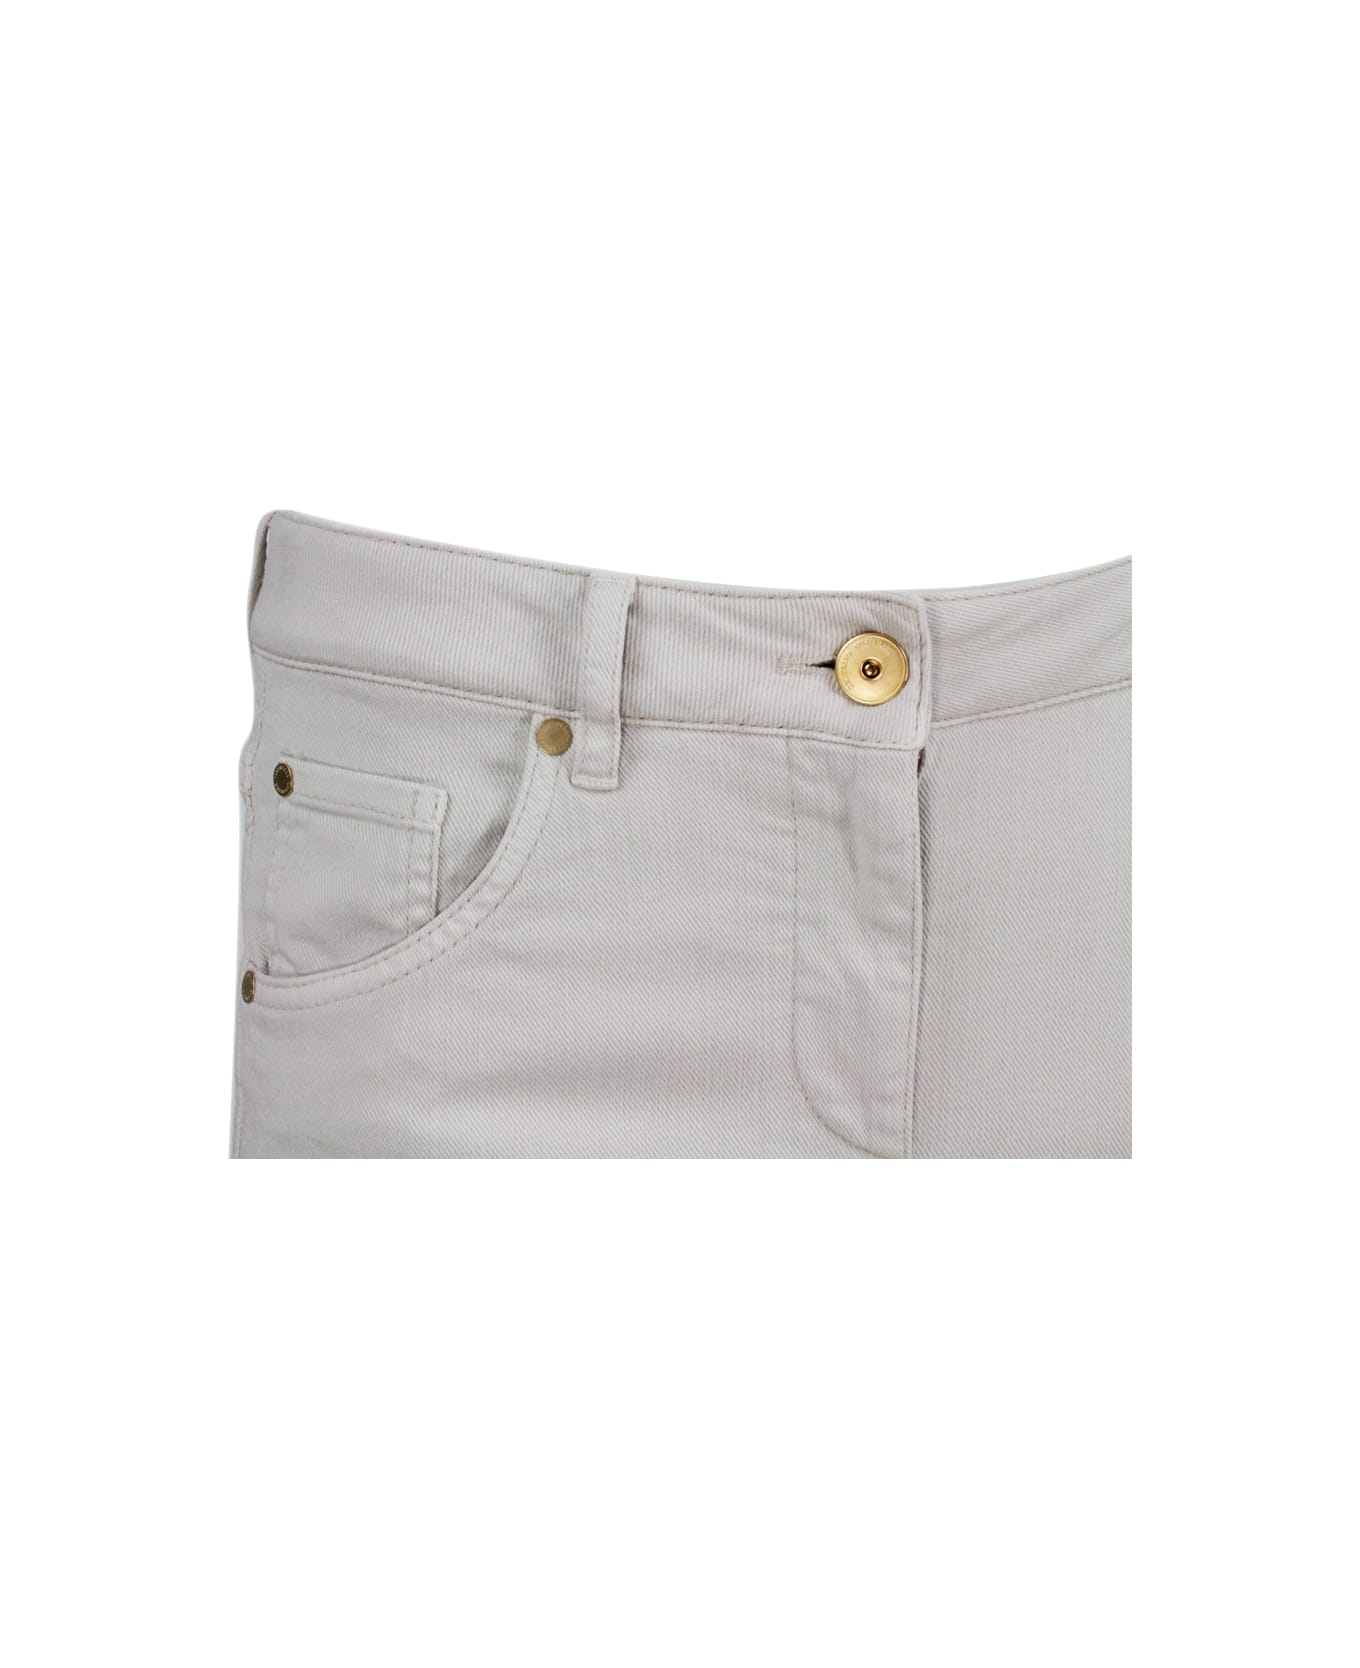 Brunello Cucinelli Pantalone A 5 Tasche In Drill Di Cotone Stretch Con Monile Sulla Tasca Posteriore - Beige